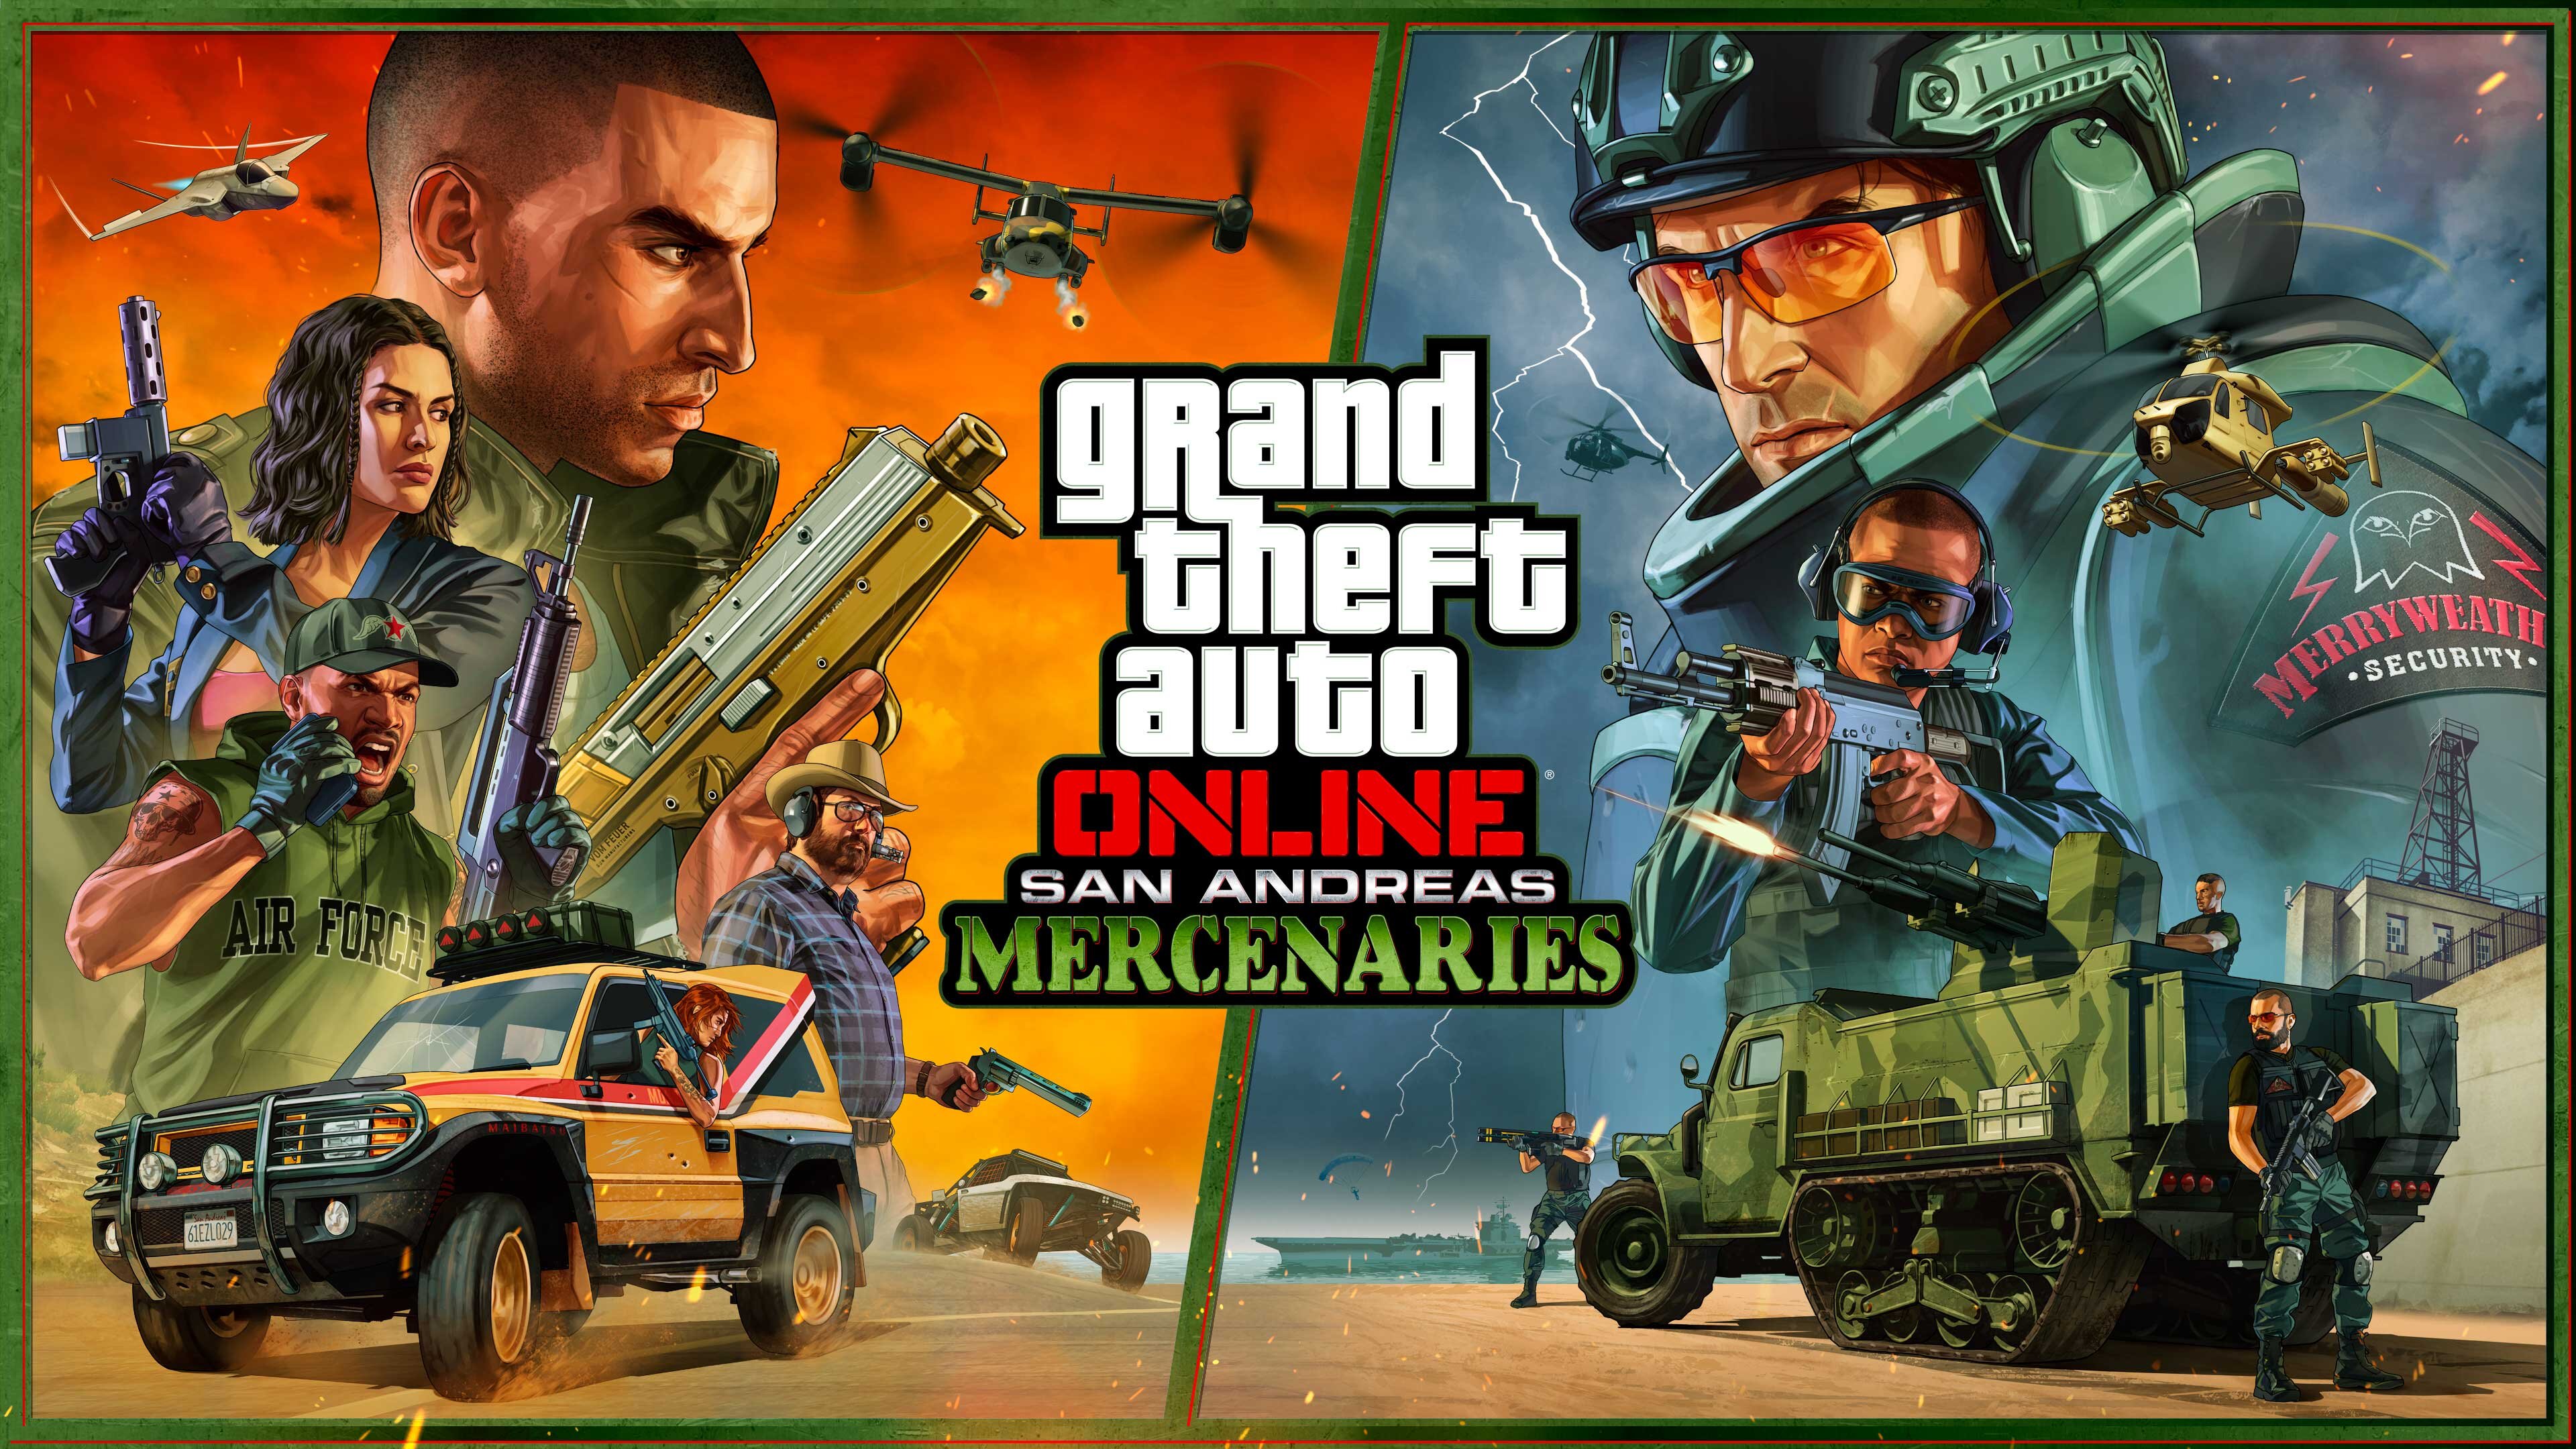 More information about "GTA Online: San Andreas Mercenaries vanaf nu speelbaar"